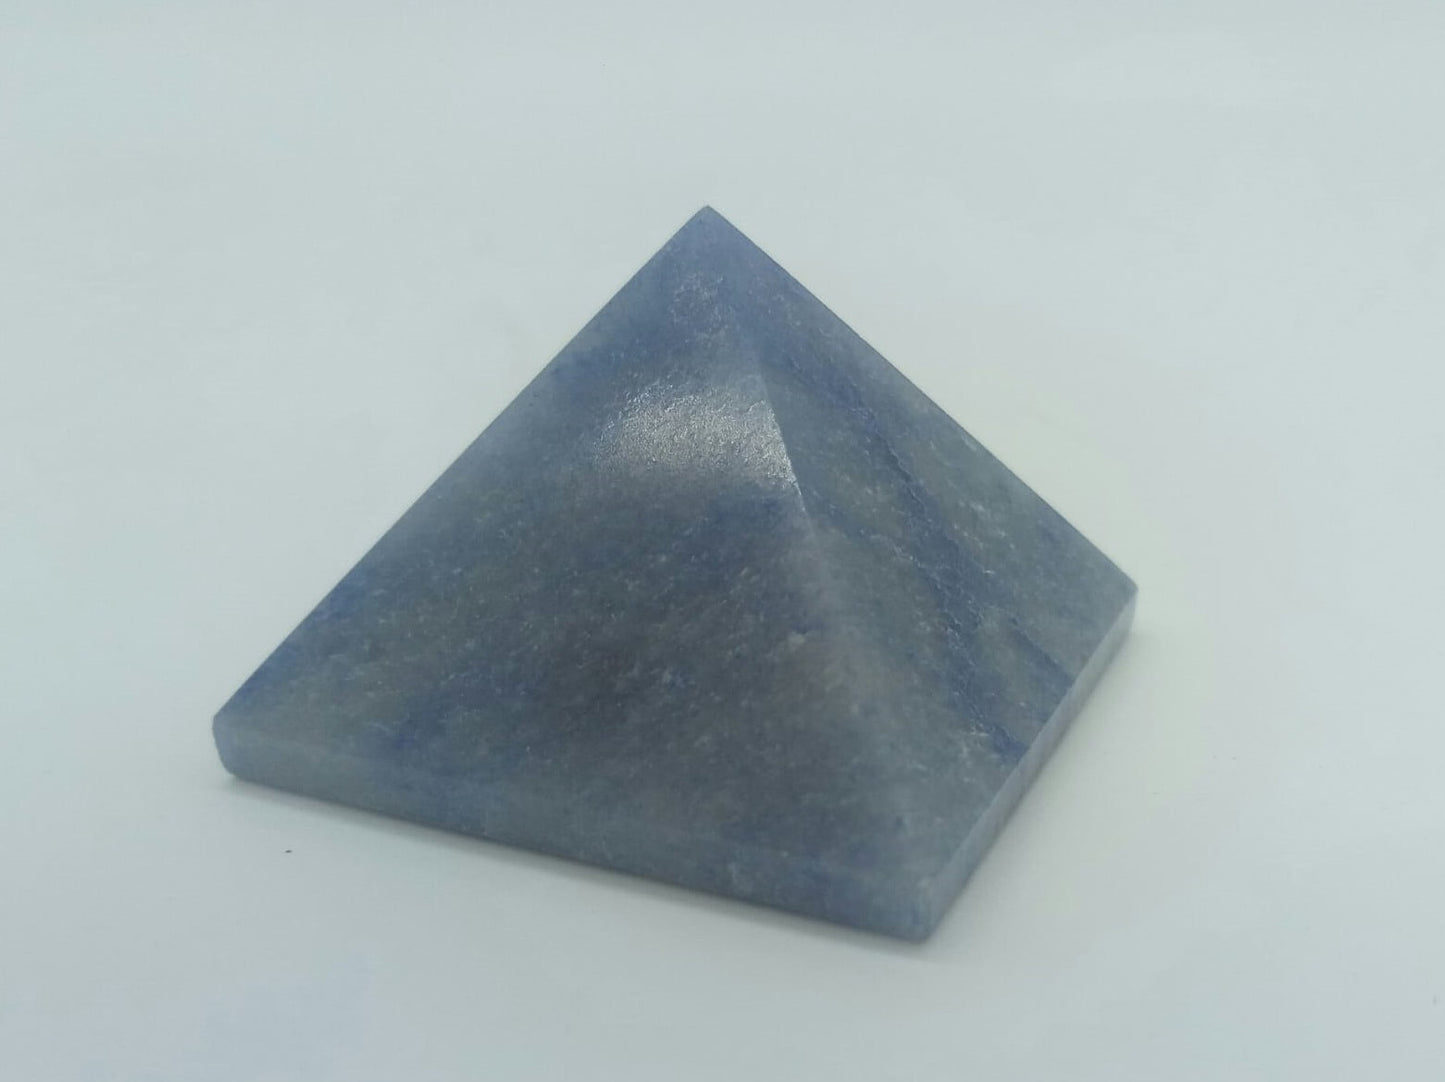 Blue Quartz Pyramid